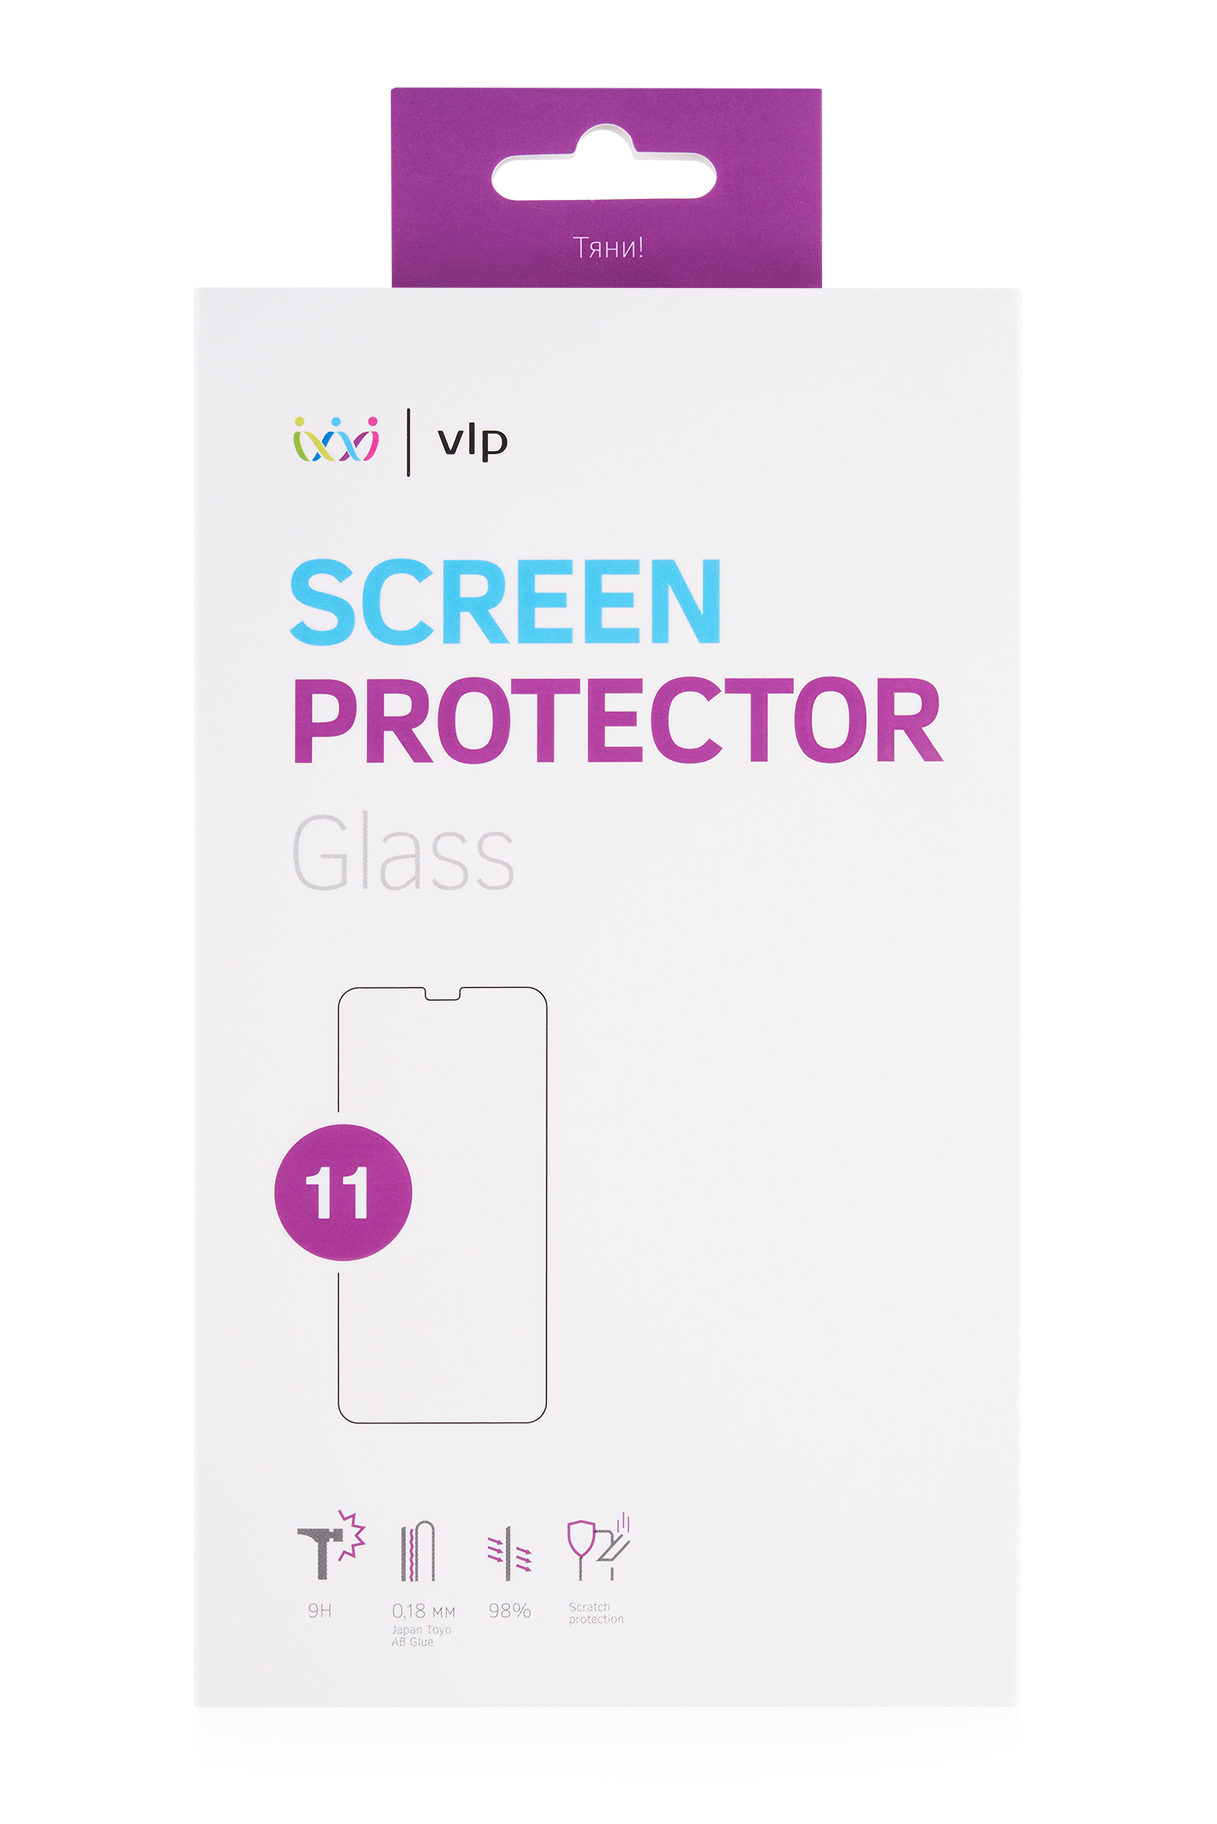 Стекло защитное VLP для iPhone 11/XR, олеофобное защитное стекло vlp стекло защитное vlp для ipad 9 7 олеофобное